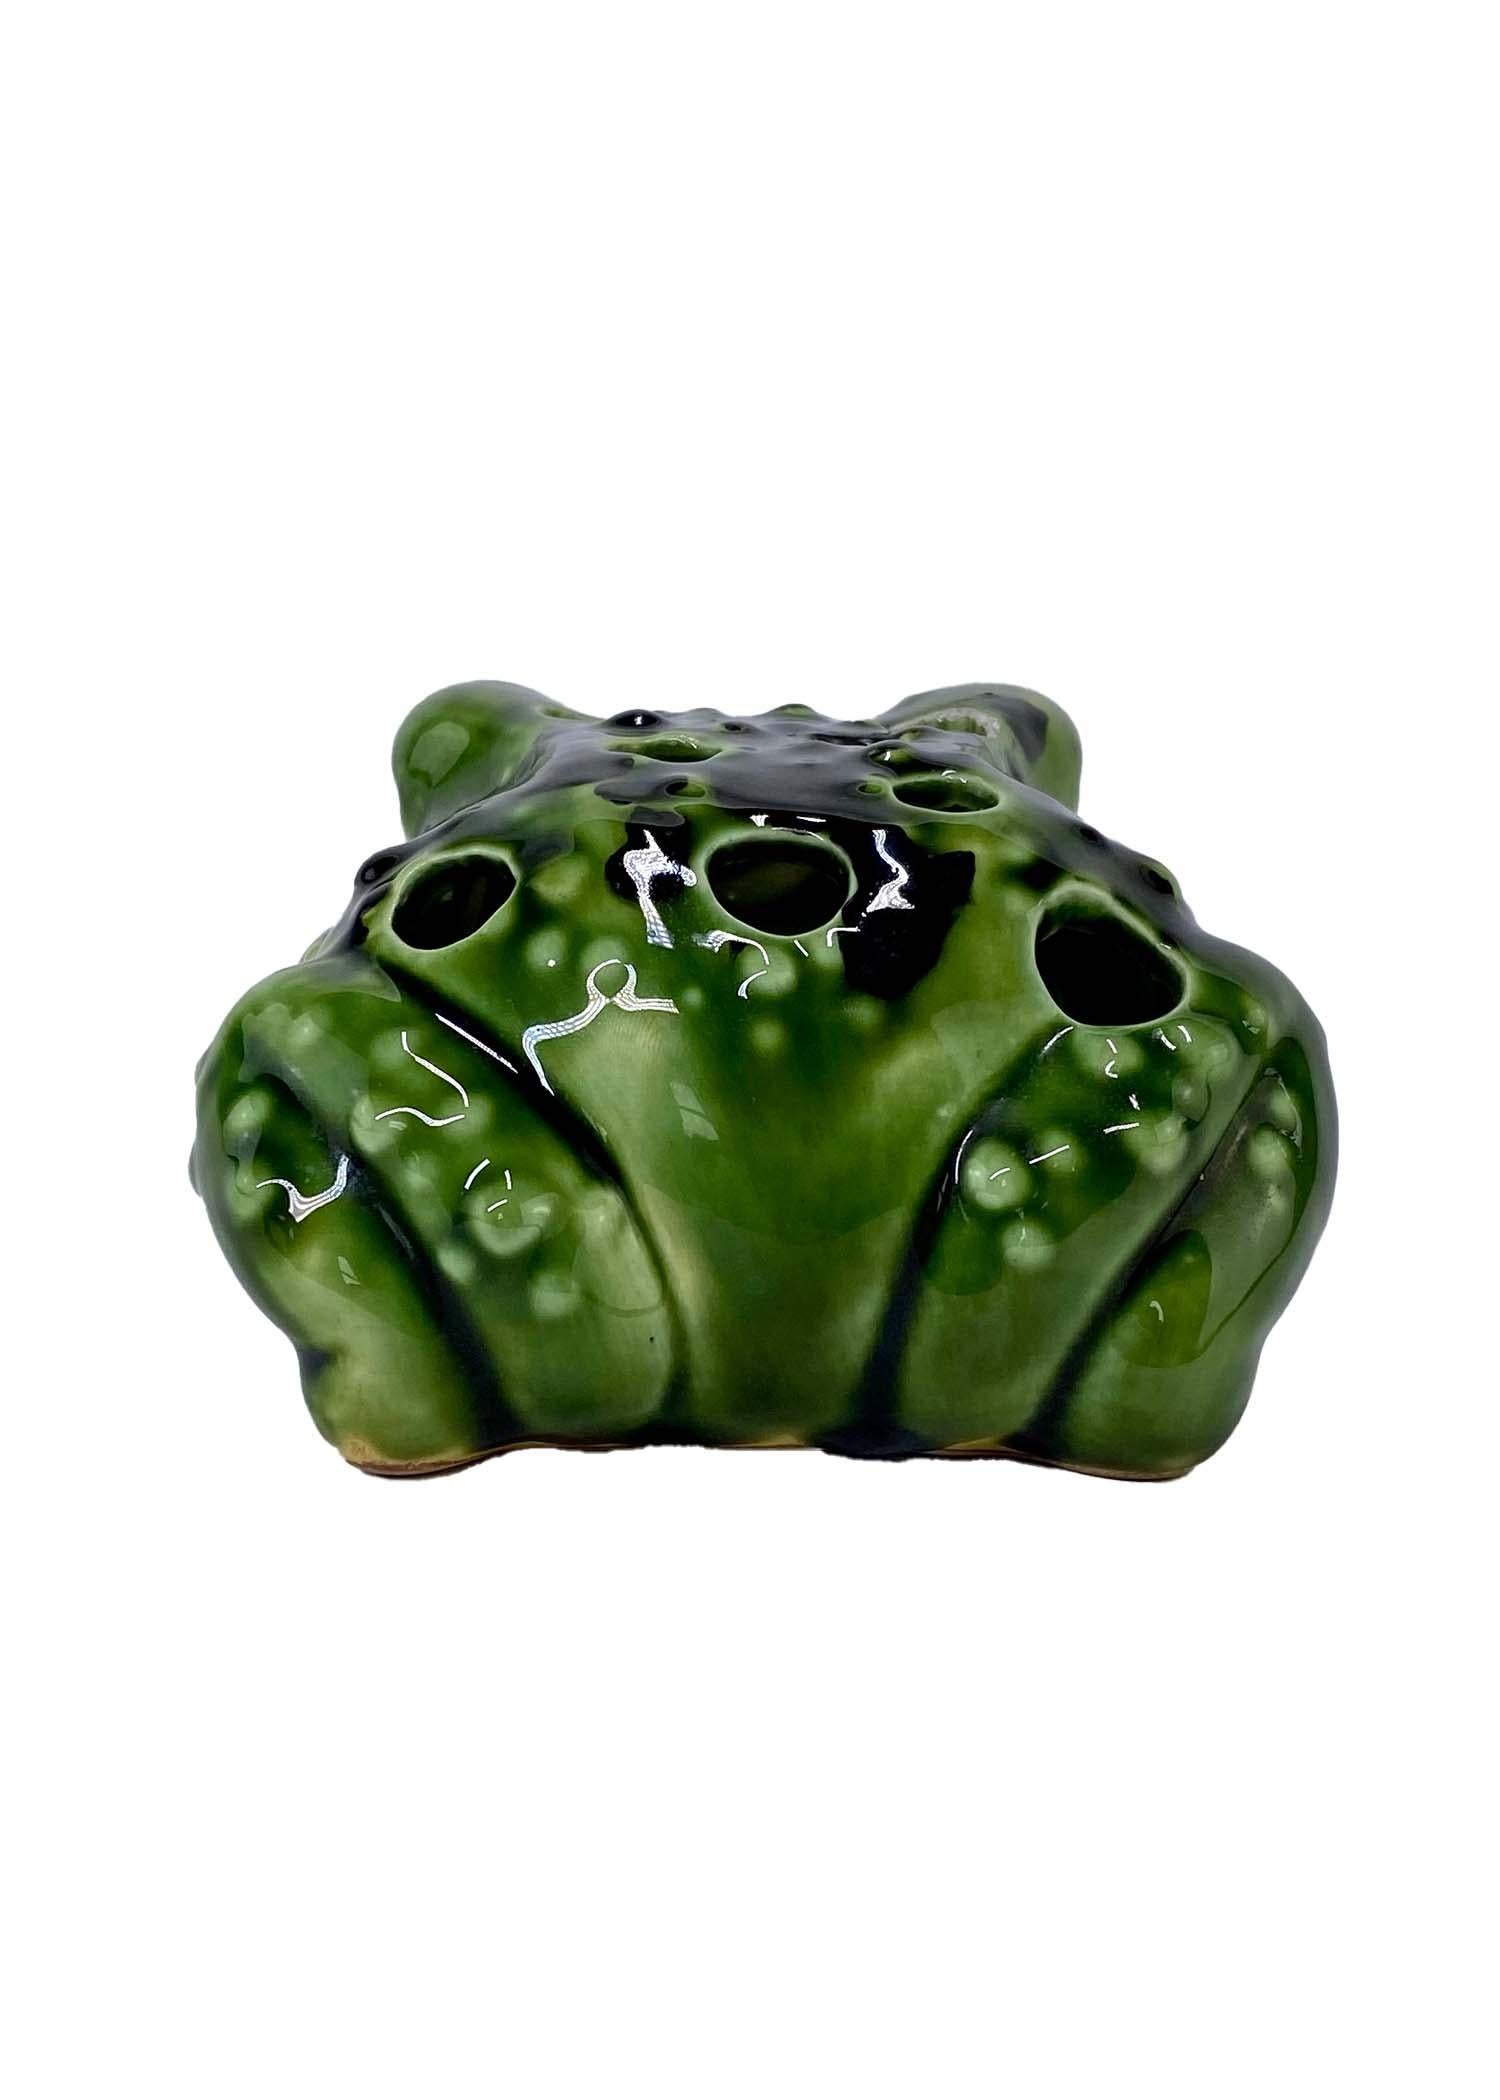 frog ceramic